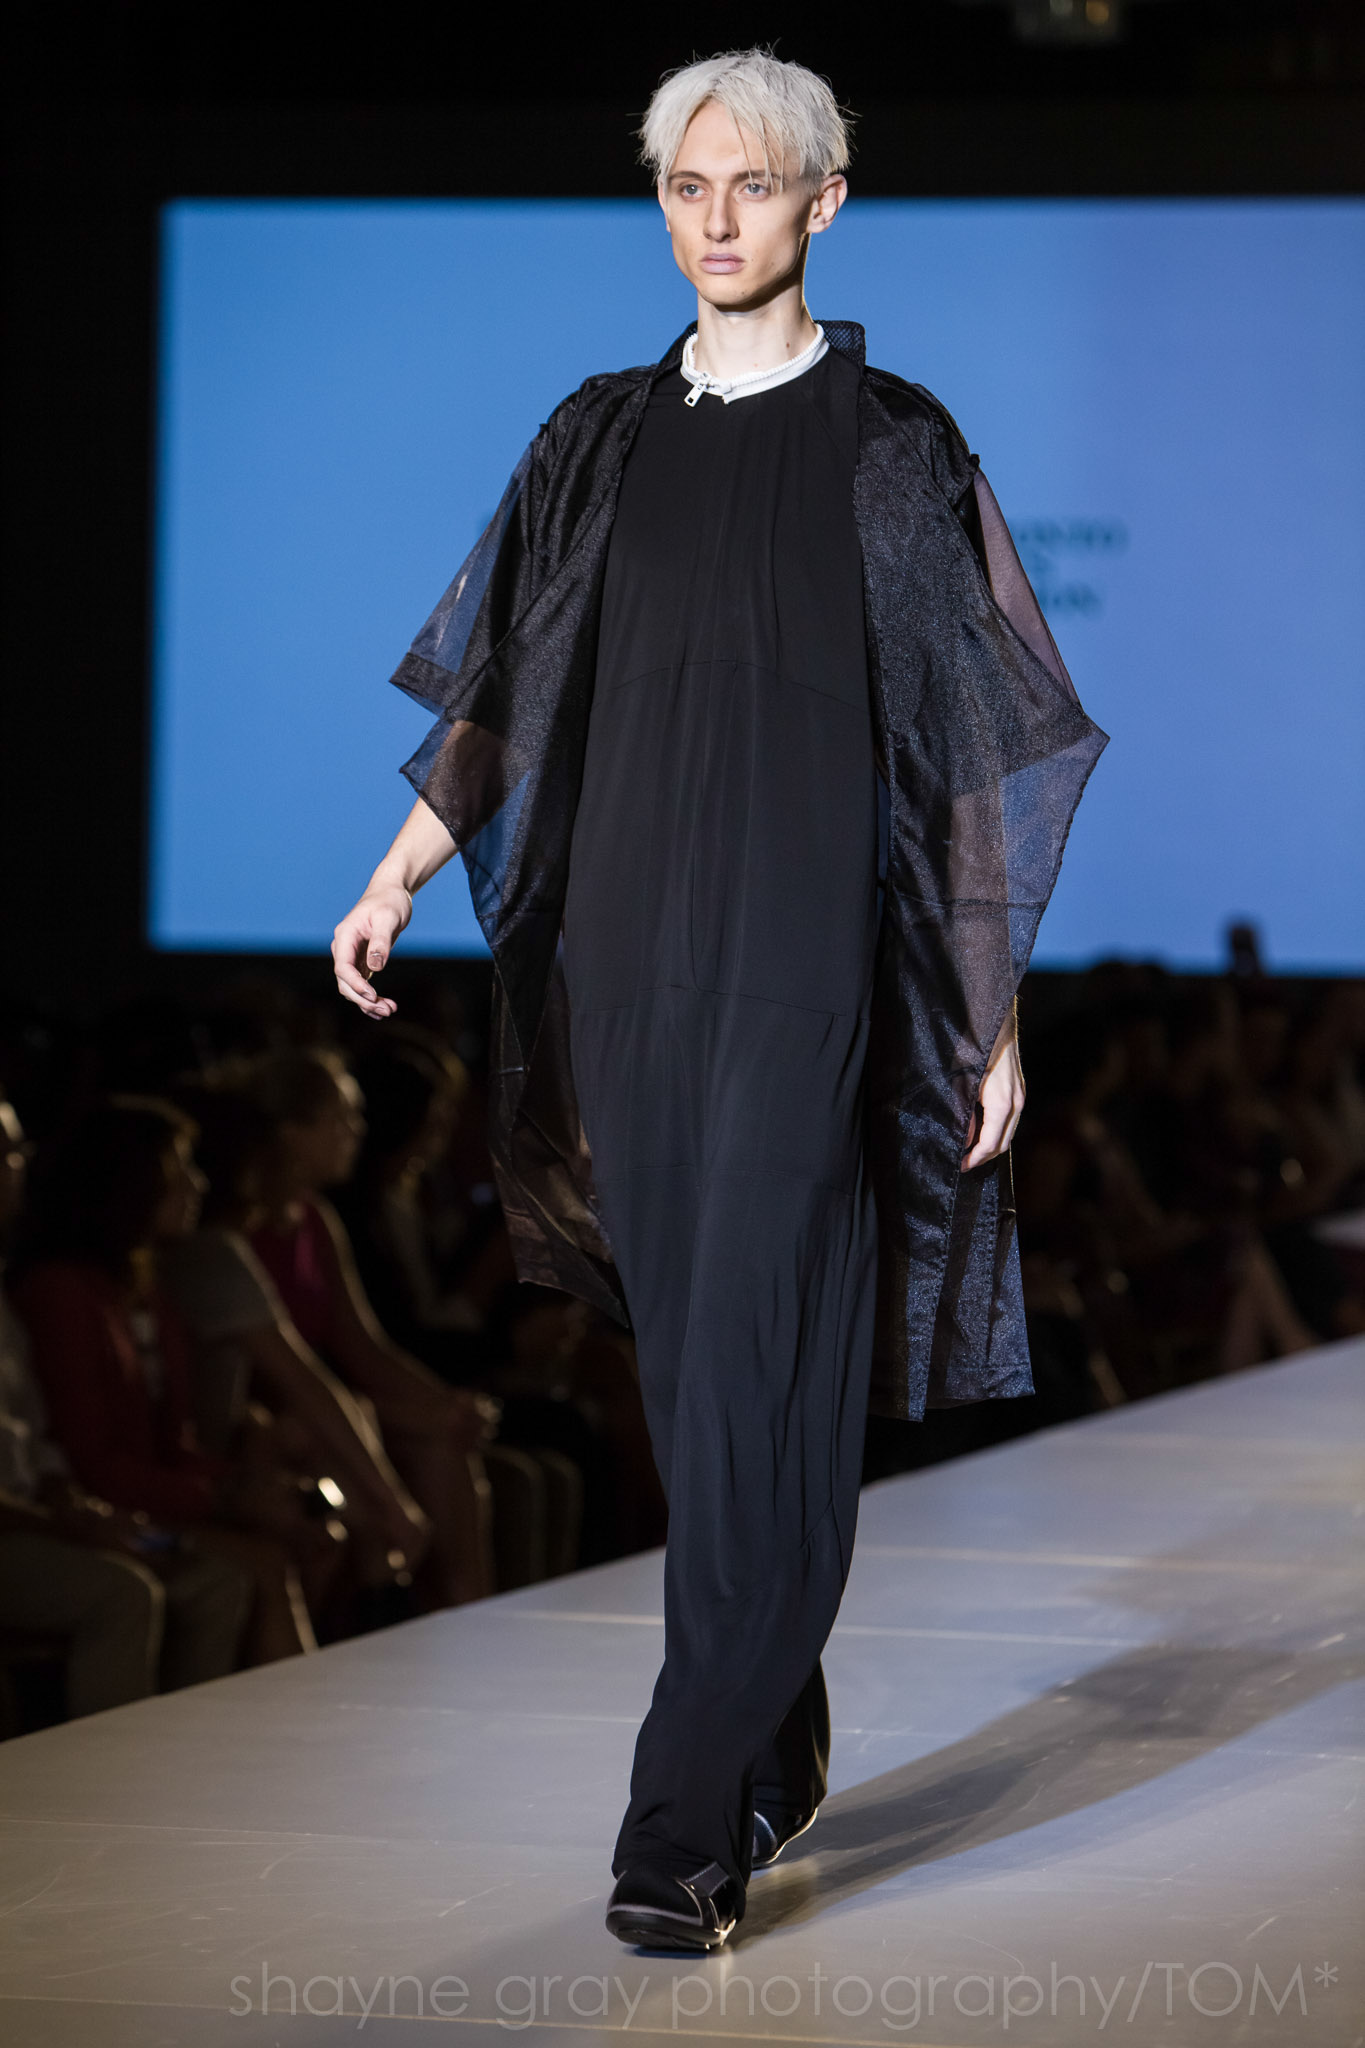 Shayne-Gray-Toronto-men's-fashion_week-TOM-jose-duran-7779.jpg